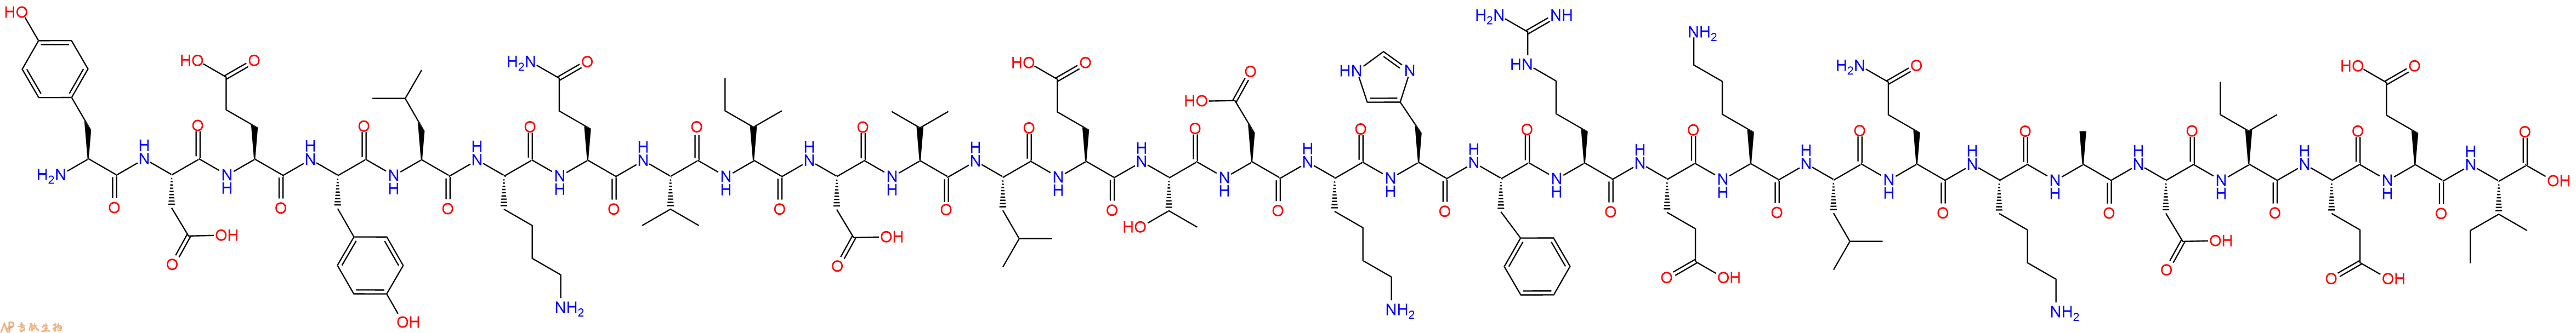 专肽生物产品Nesfatin蛋白片段 Nesfatin-1 (30-59) (human)1872441-21-8